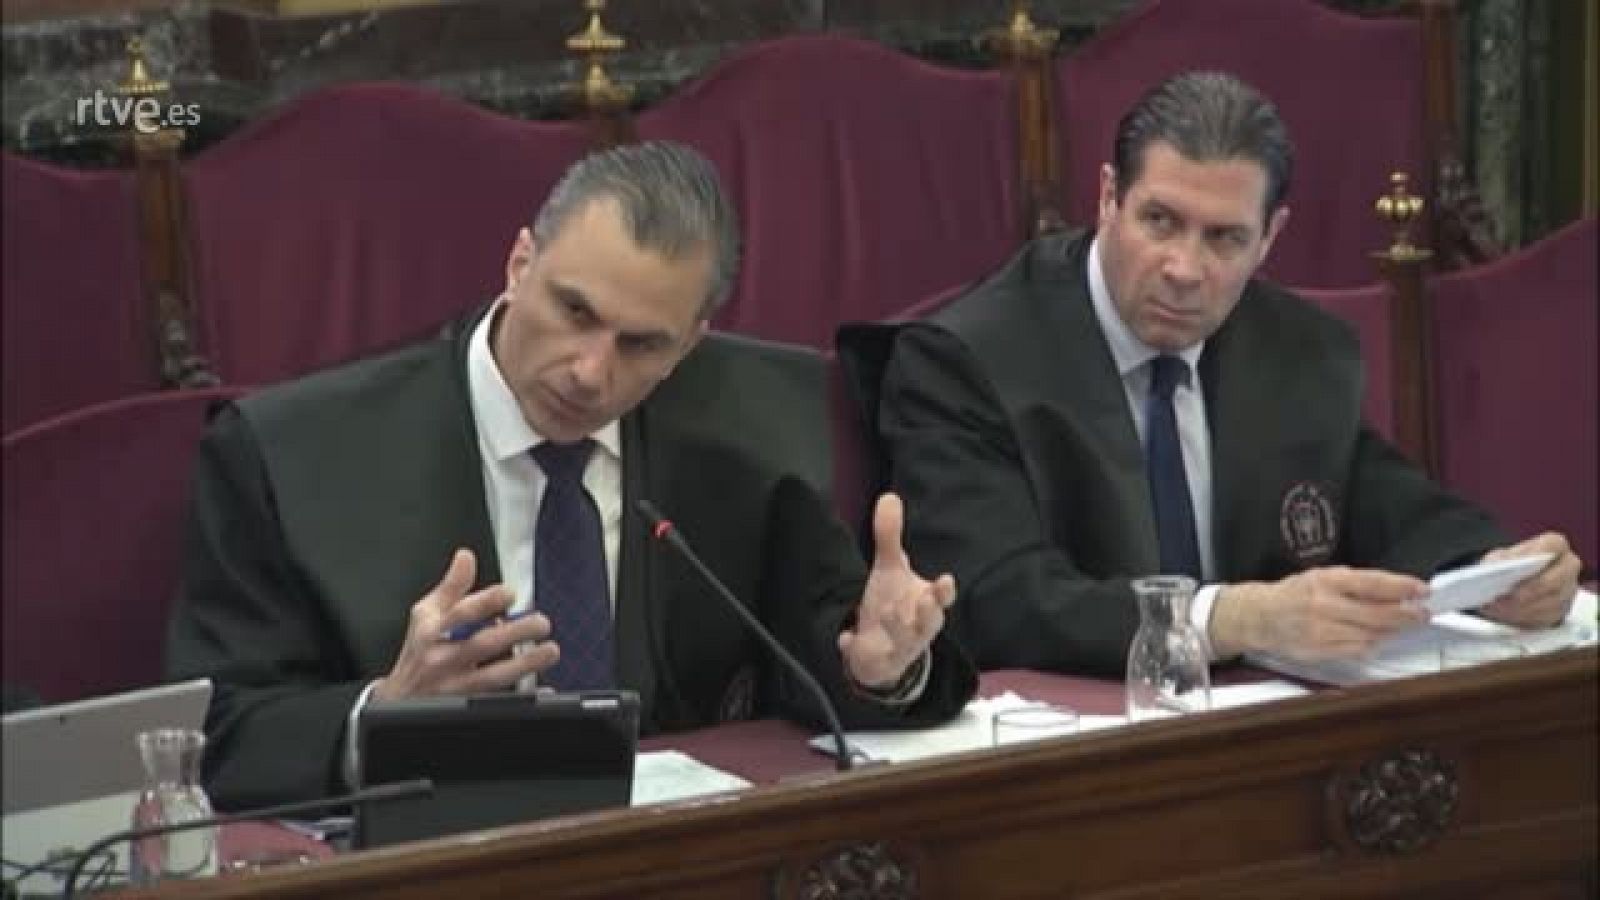 Un segundo comisario asegura que Puigdemont contempl declarar la independencia el 1-O si haba "alguna desgracia"